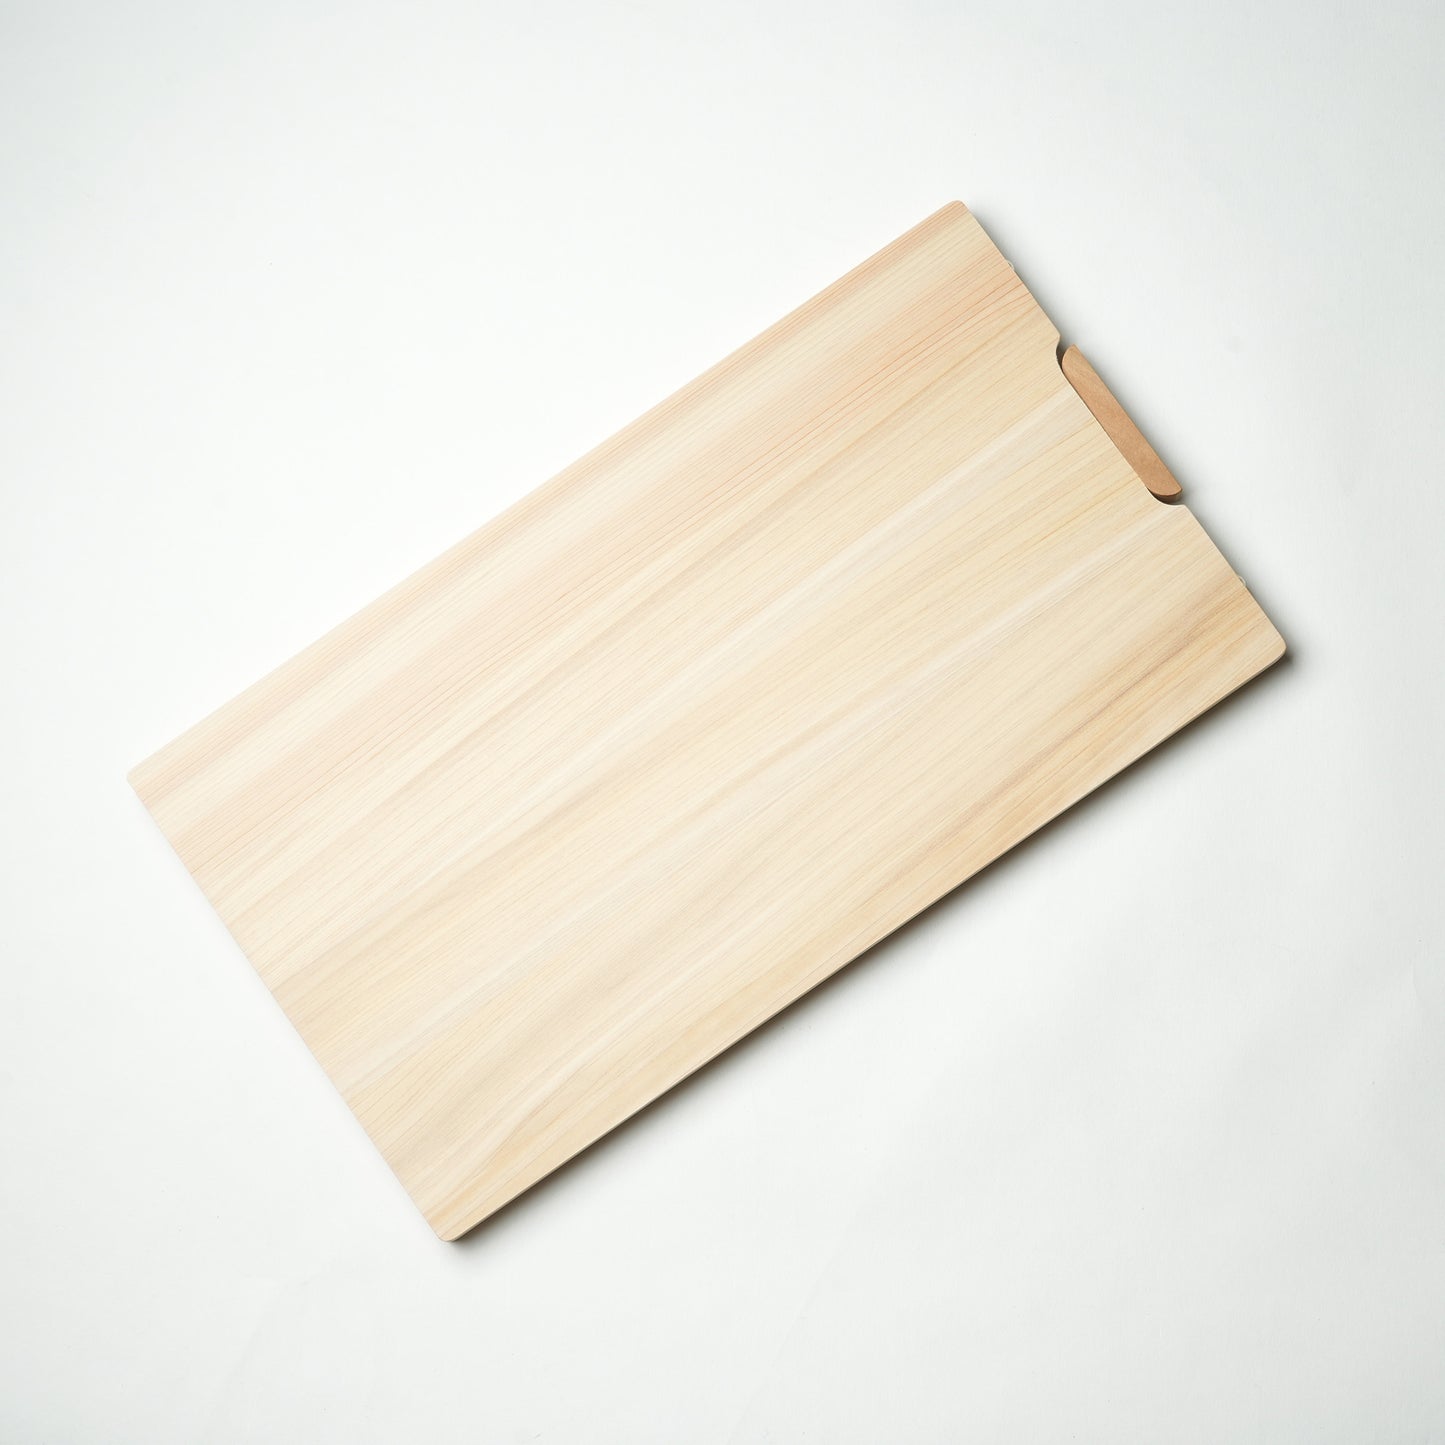 Japanese Hinoki Cutting Board